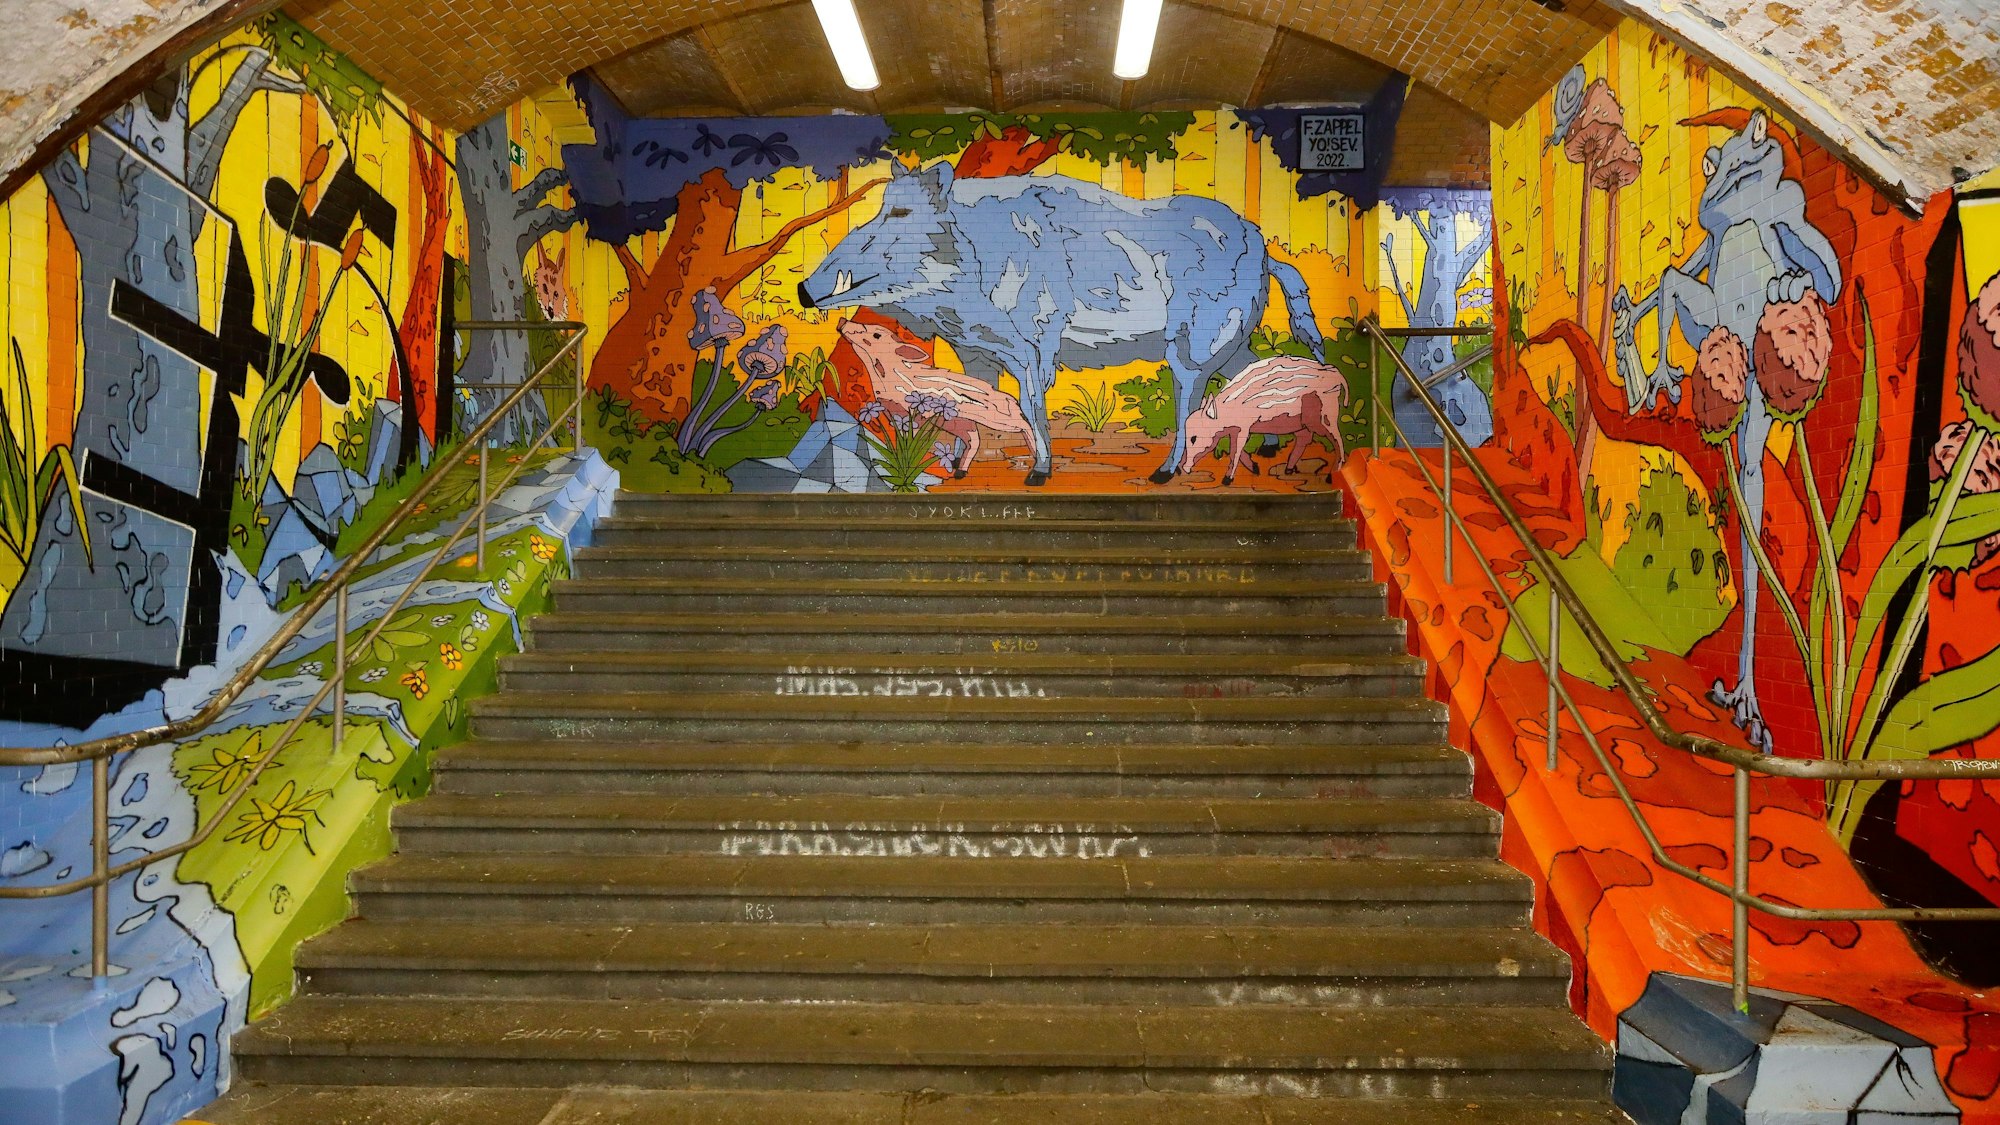 Kunst im Bahnhof Köln-West: Auf drei mit Graffiti beschriebenen Wänden ist eine bunte Waldszene mit Wildschweinen, Rehen und anderen Tieren zu sehen.